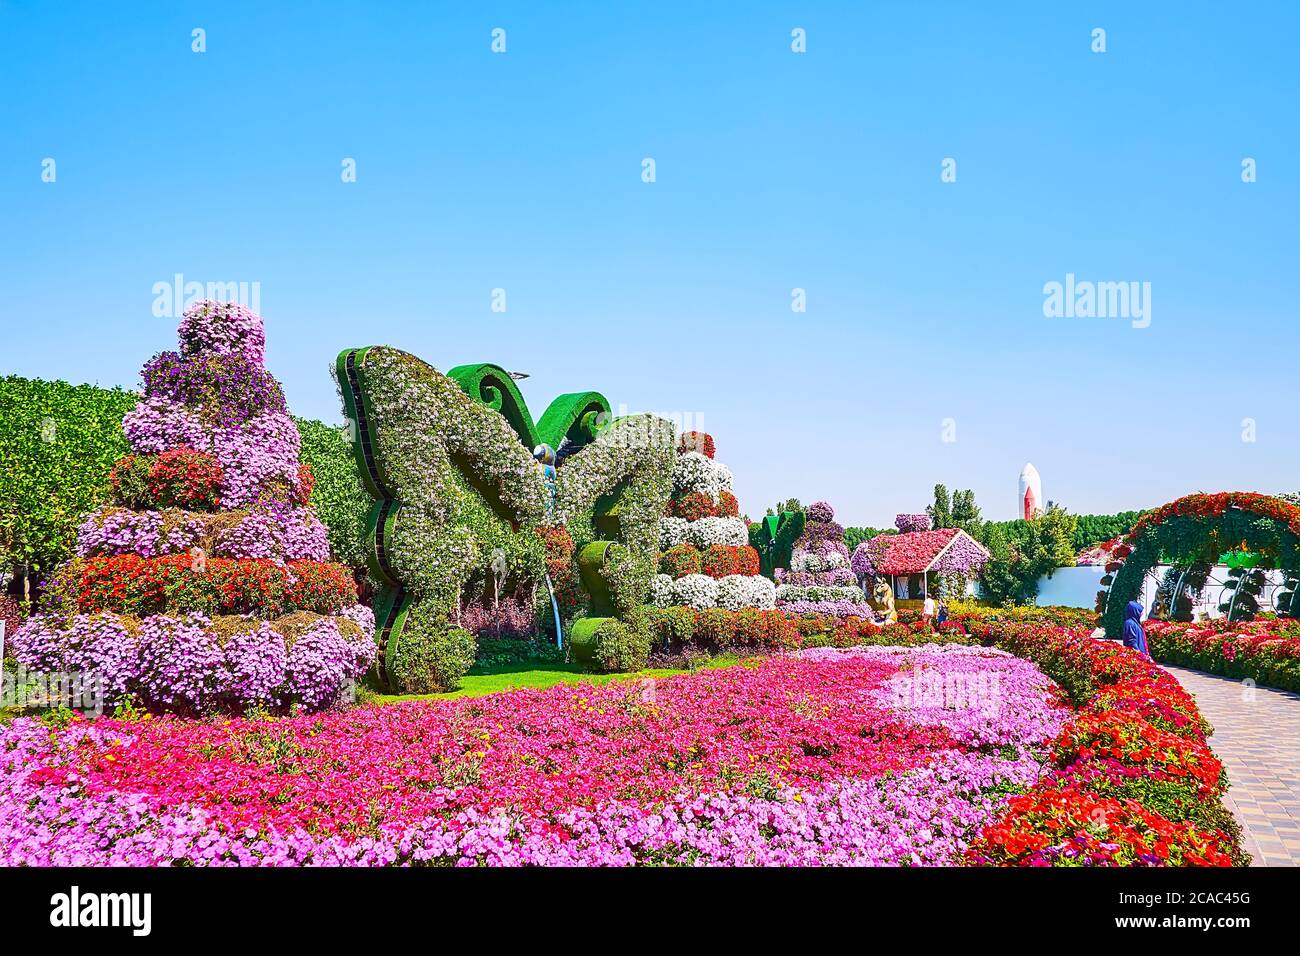 DUBAI, EAU - 5 DE MARZO de 2020: El lecho de flores de color rosa brillante de las petunias está decorado con la instalación de mariposas y stand con plantas en macetas, Miracle Gar Foto de stock